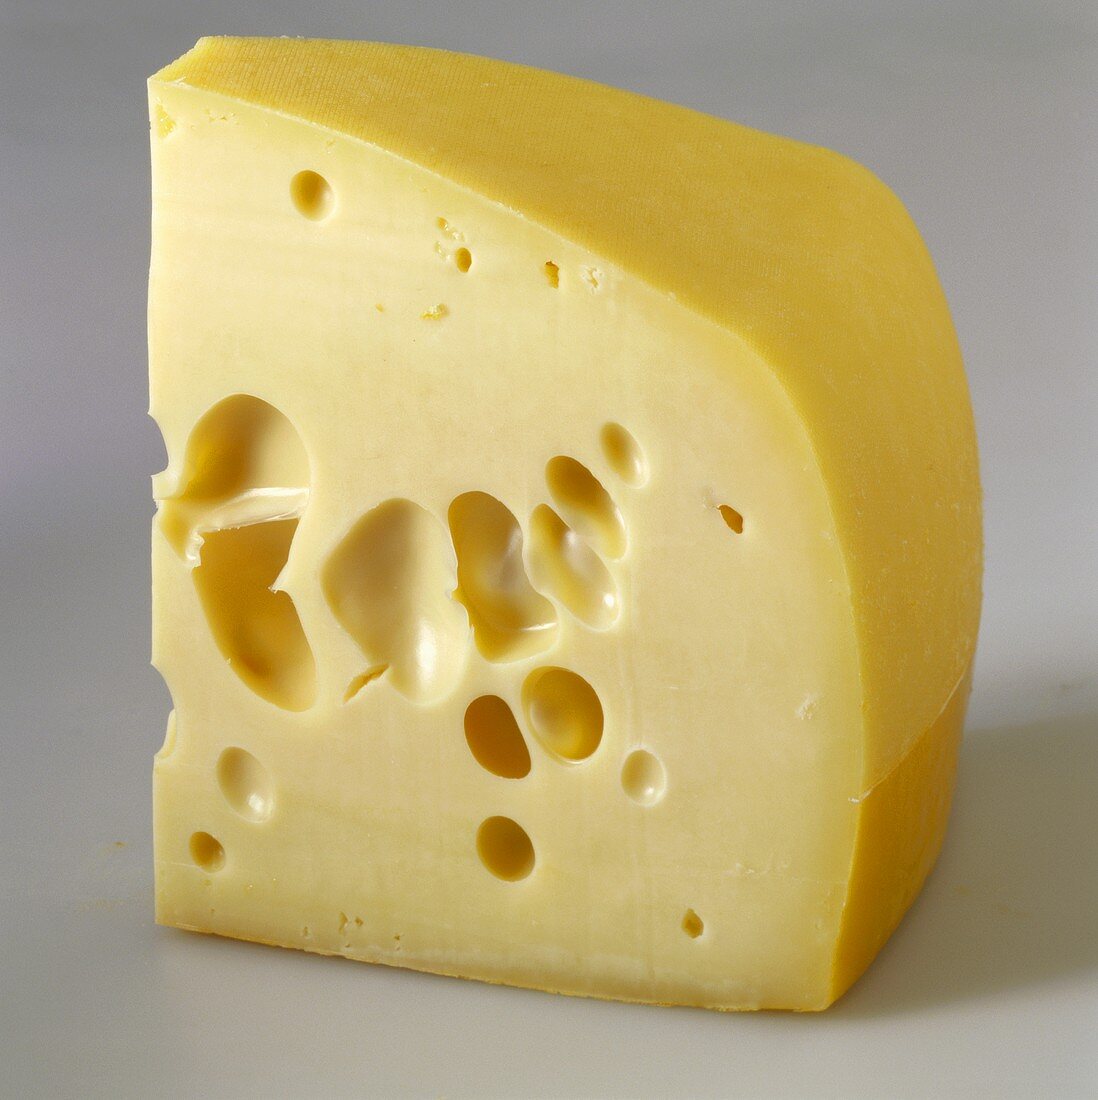 Ein Stück Westberg-Käse